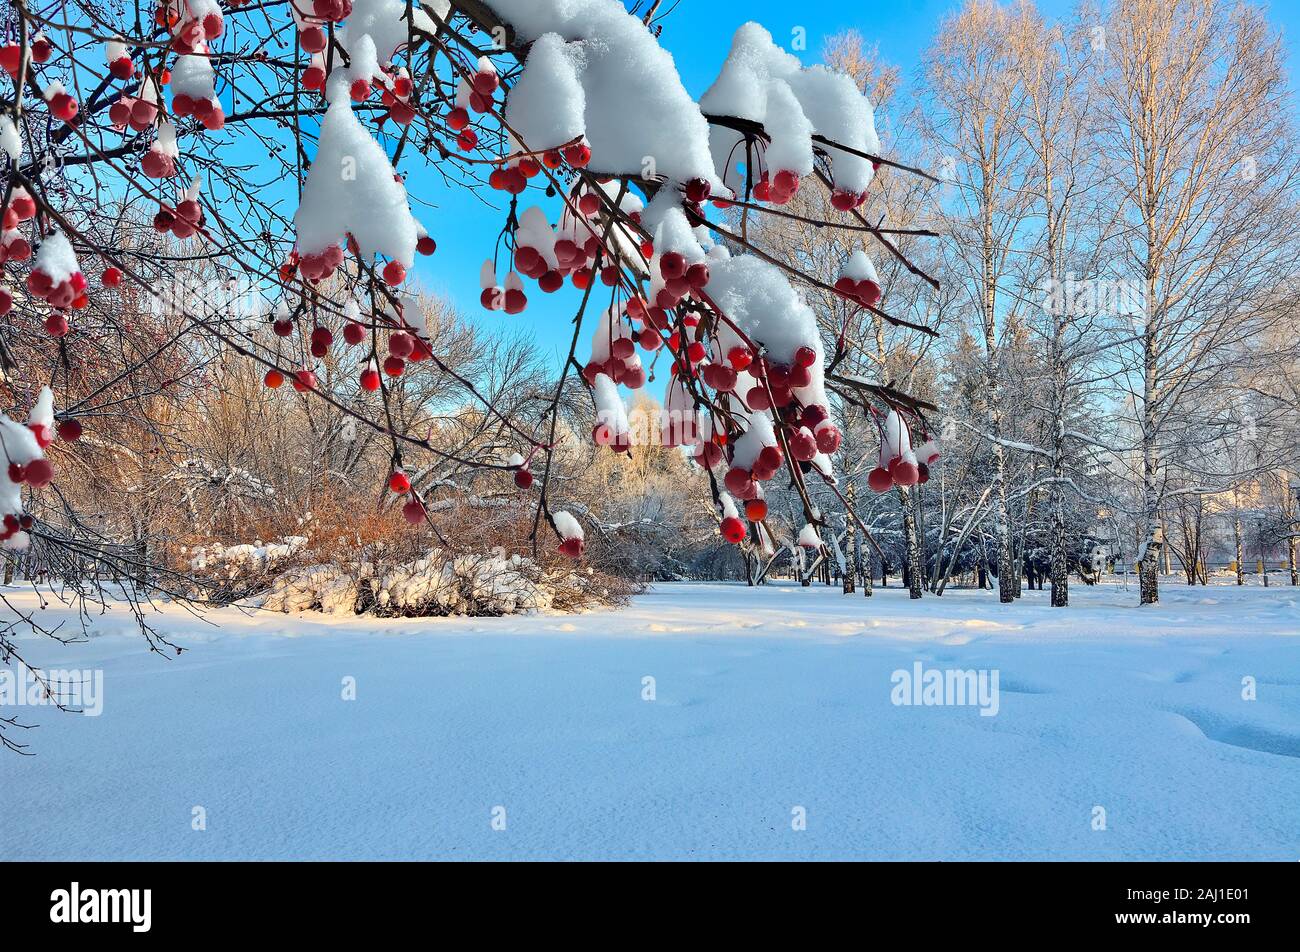 Snow-covered de pommier sauvage avec des fruits rouges fermer jusqu'au premier plan et de beaux paysage d'hiver du parc de la ville de soleil matinal. L'hiver Banque D'Images